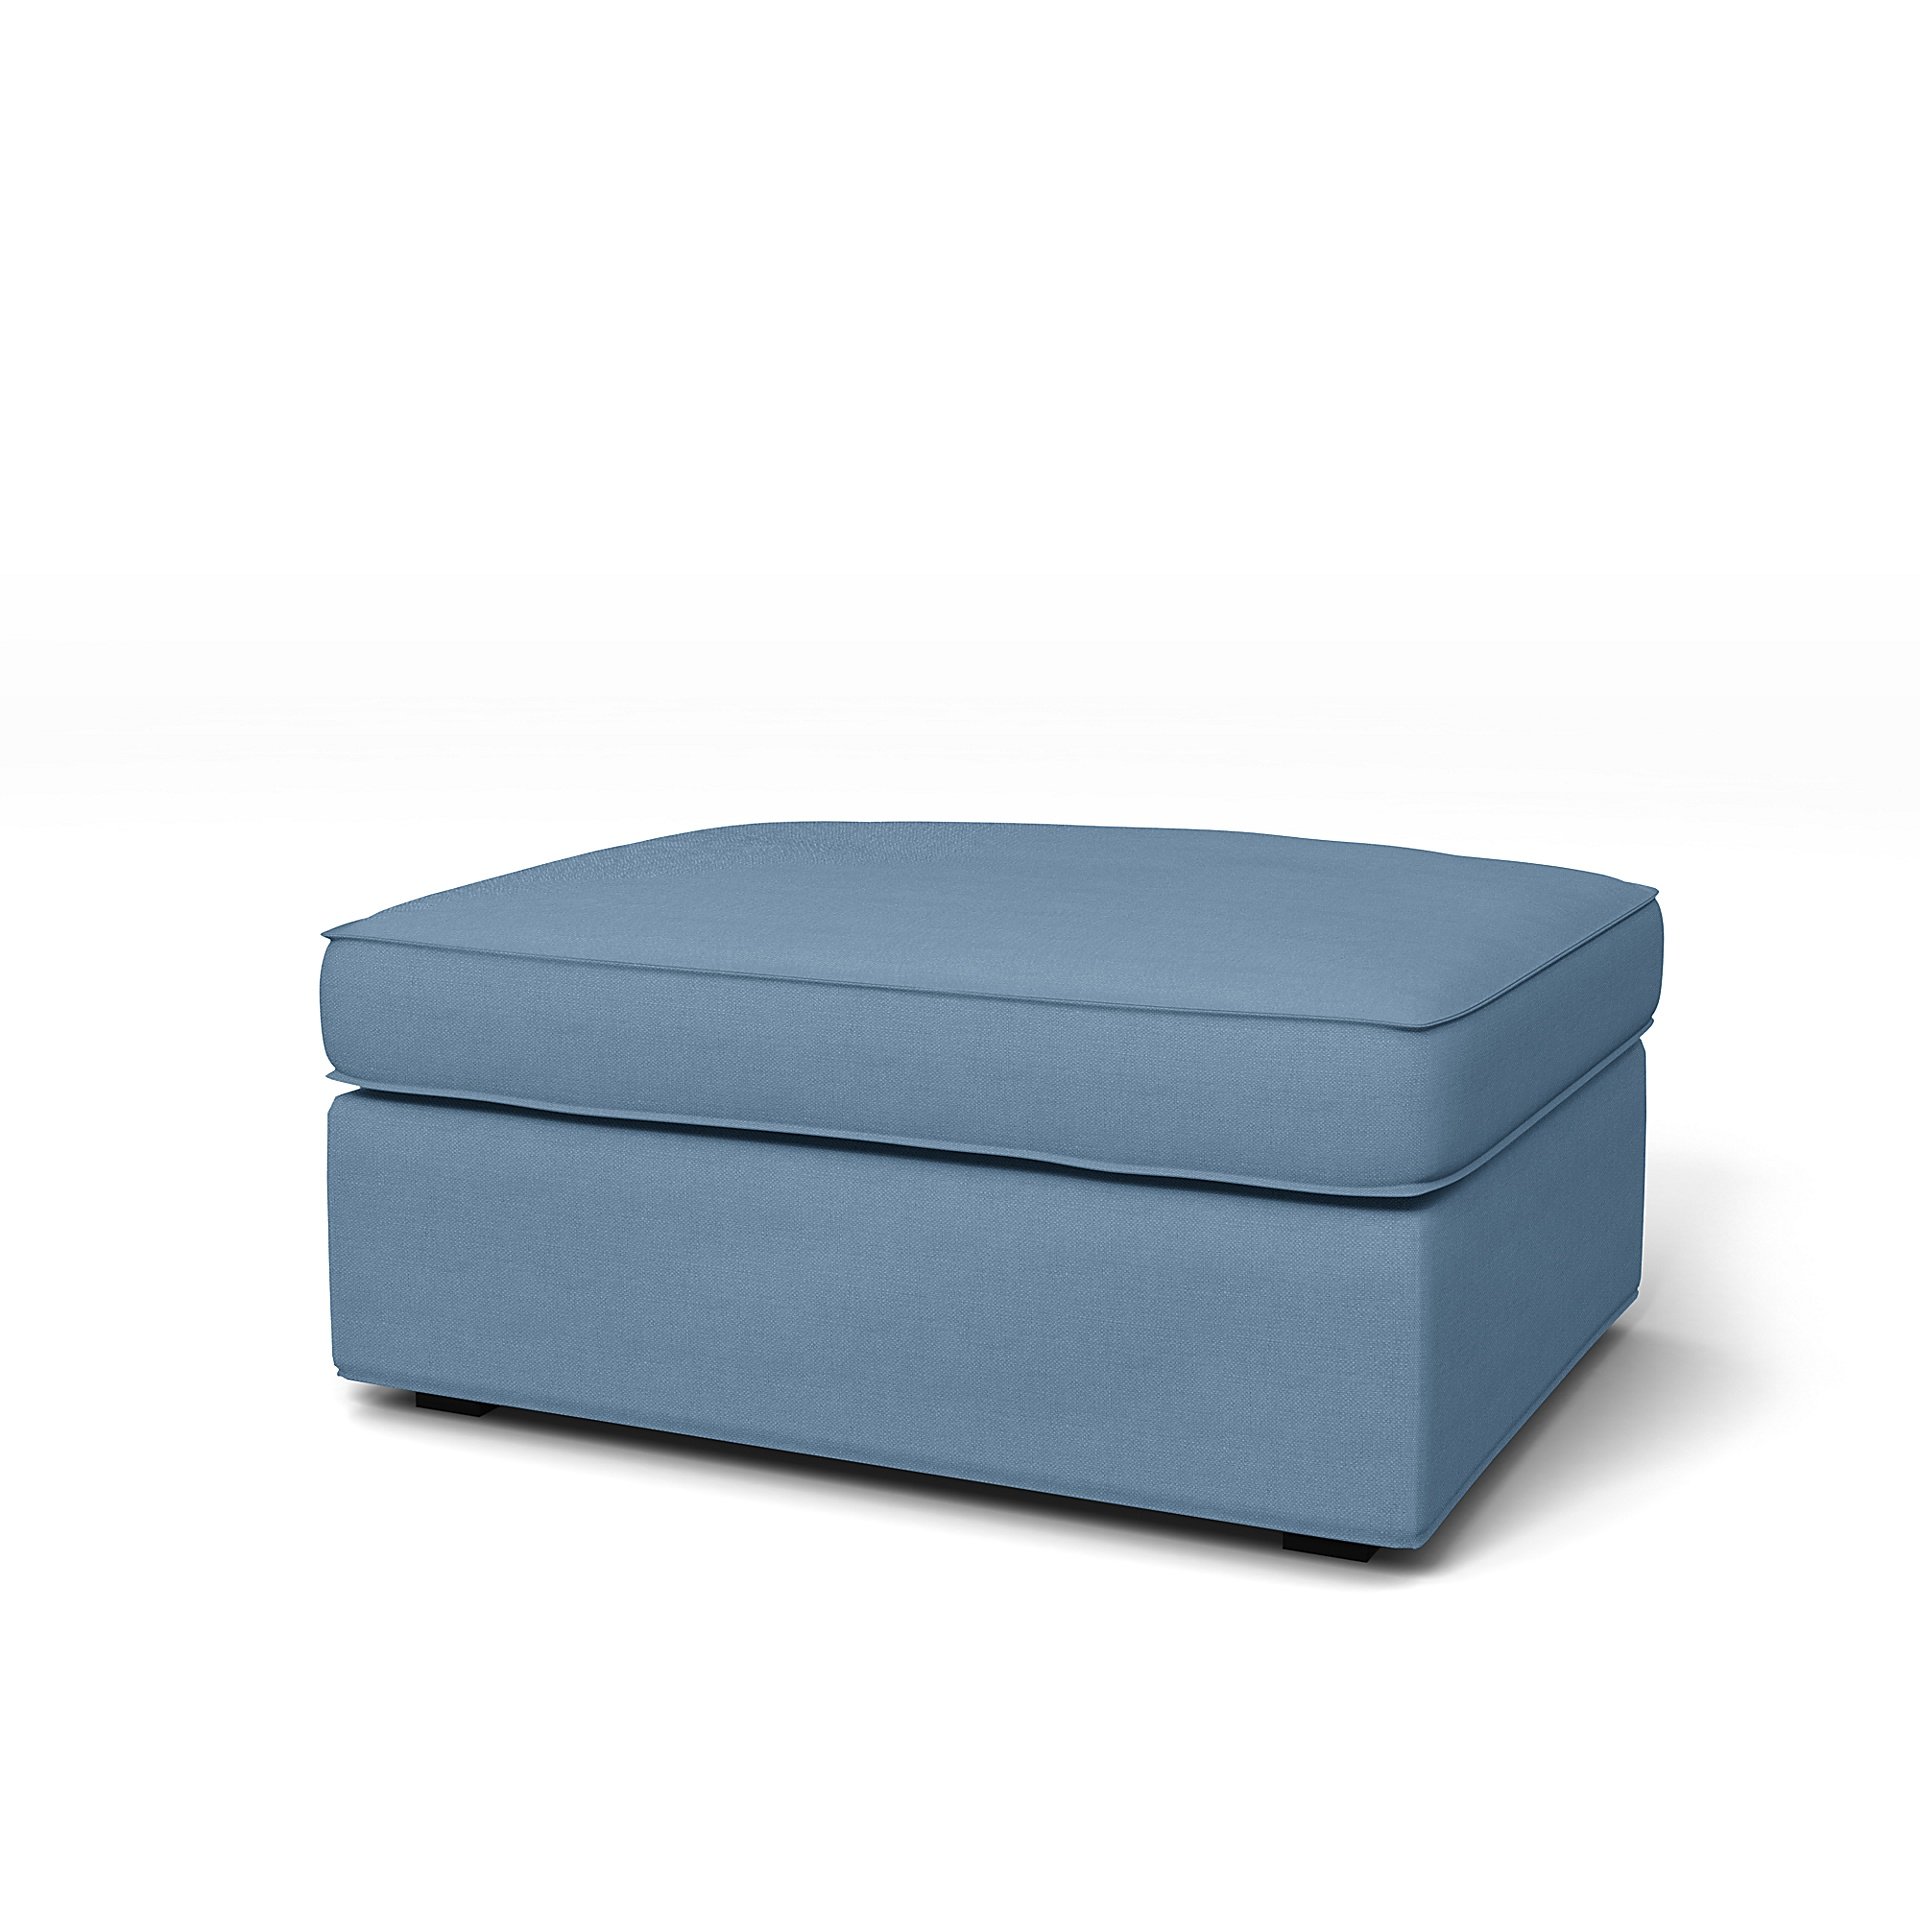 IKEA - Kivik Footstool Cover, Vintage Blue, Linen - Bemz